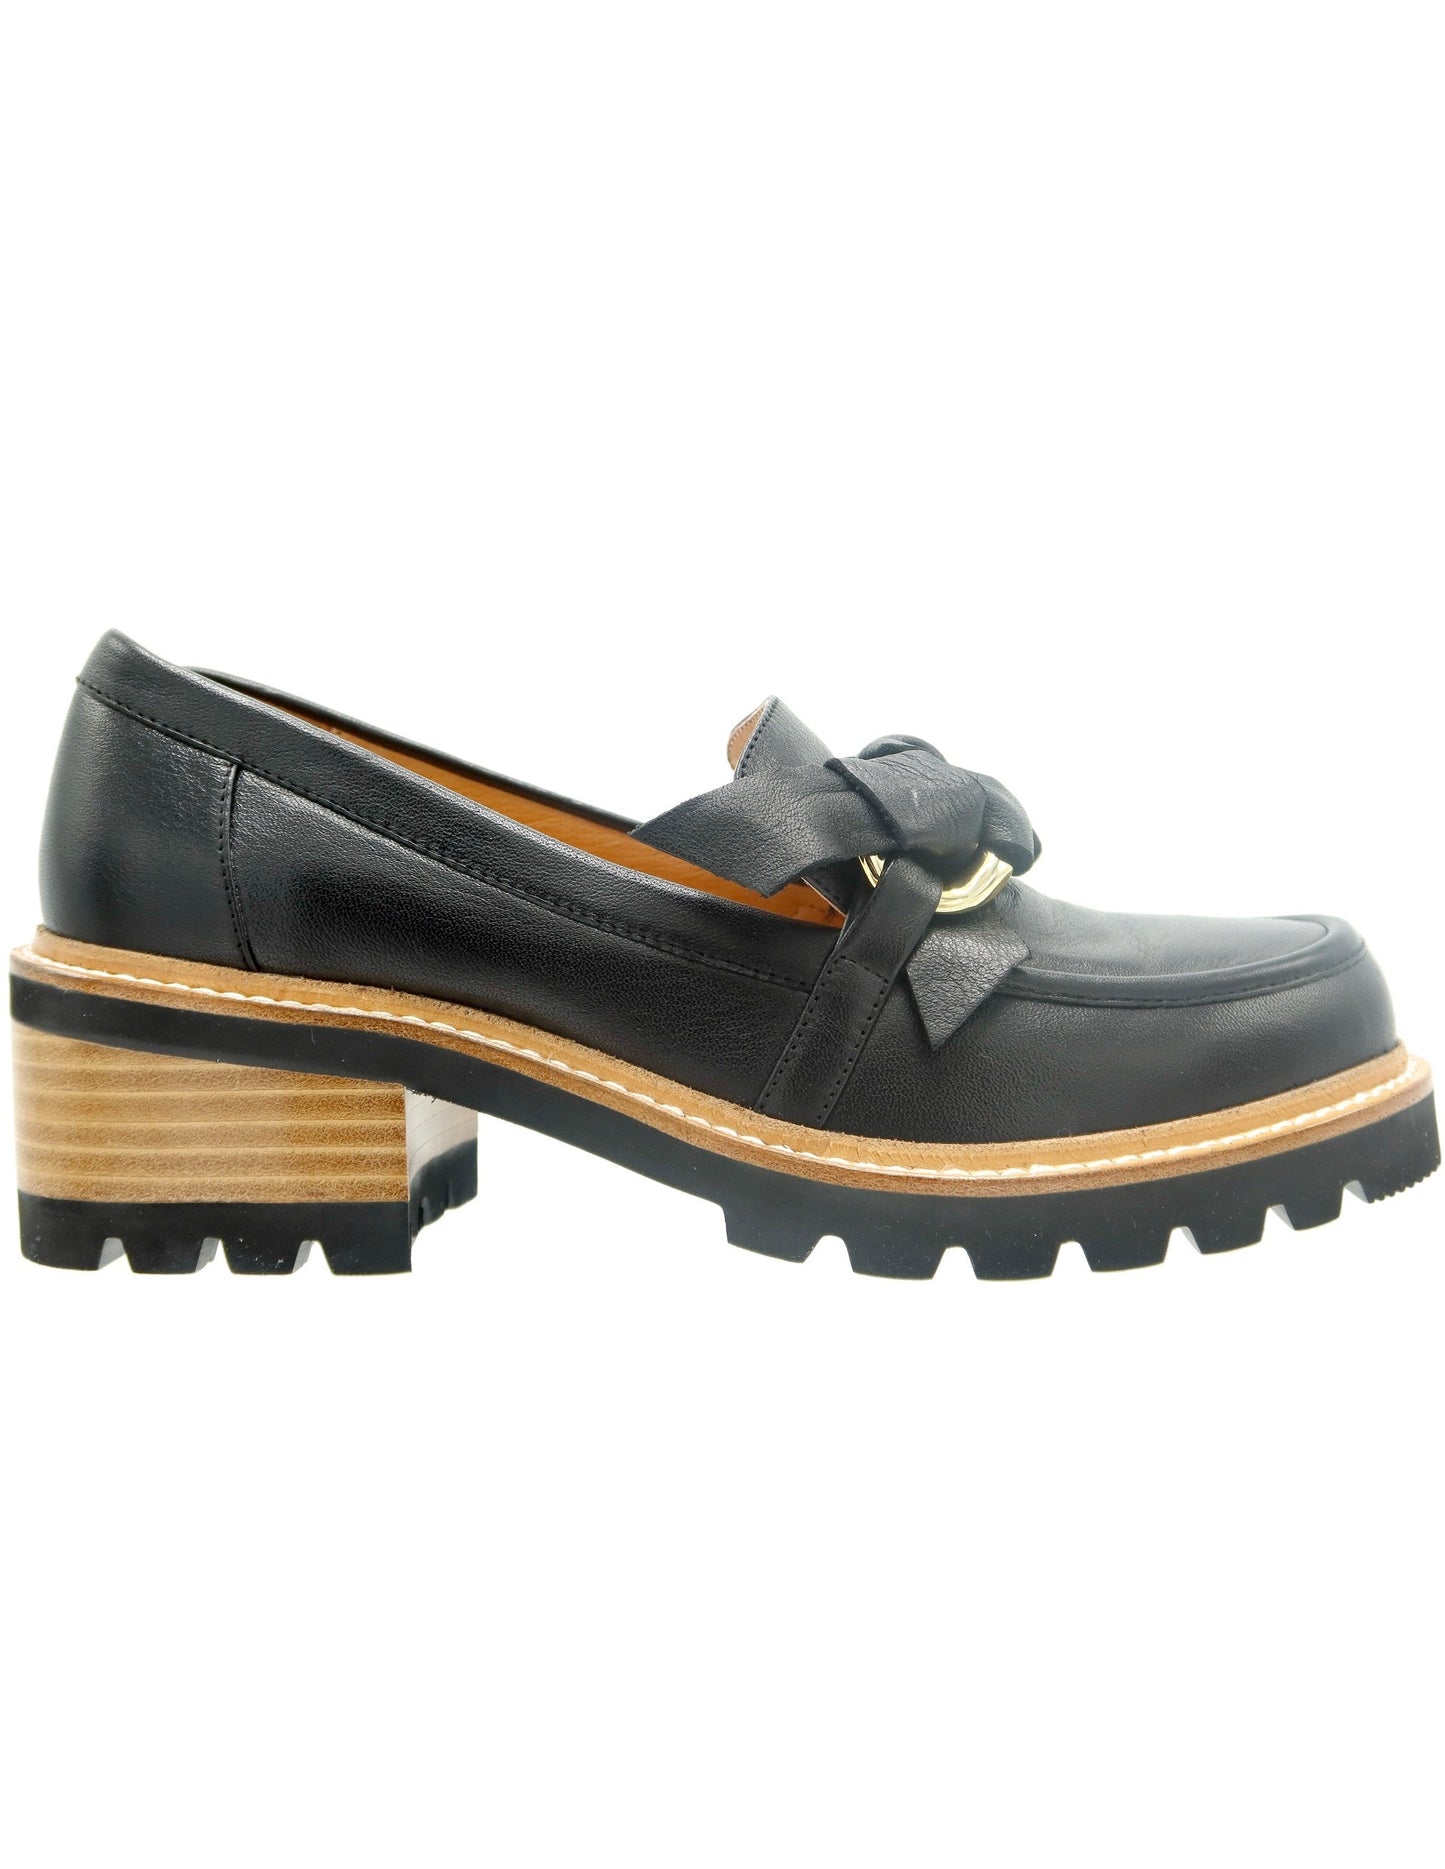 Bresley Dobbie Leather Loafer Shoe - Black